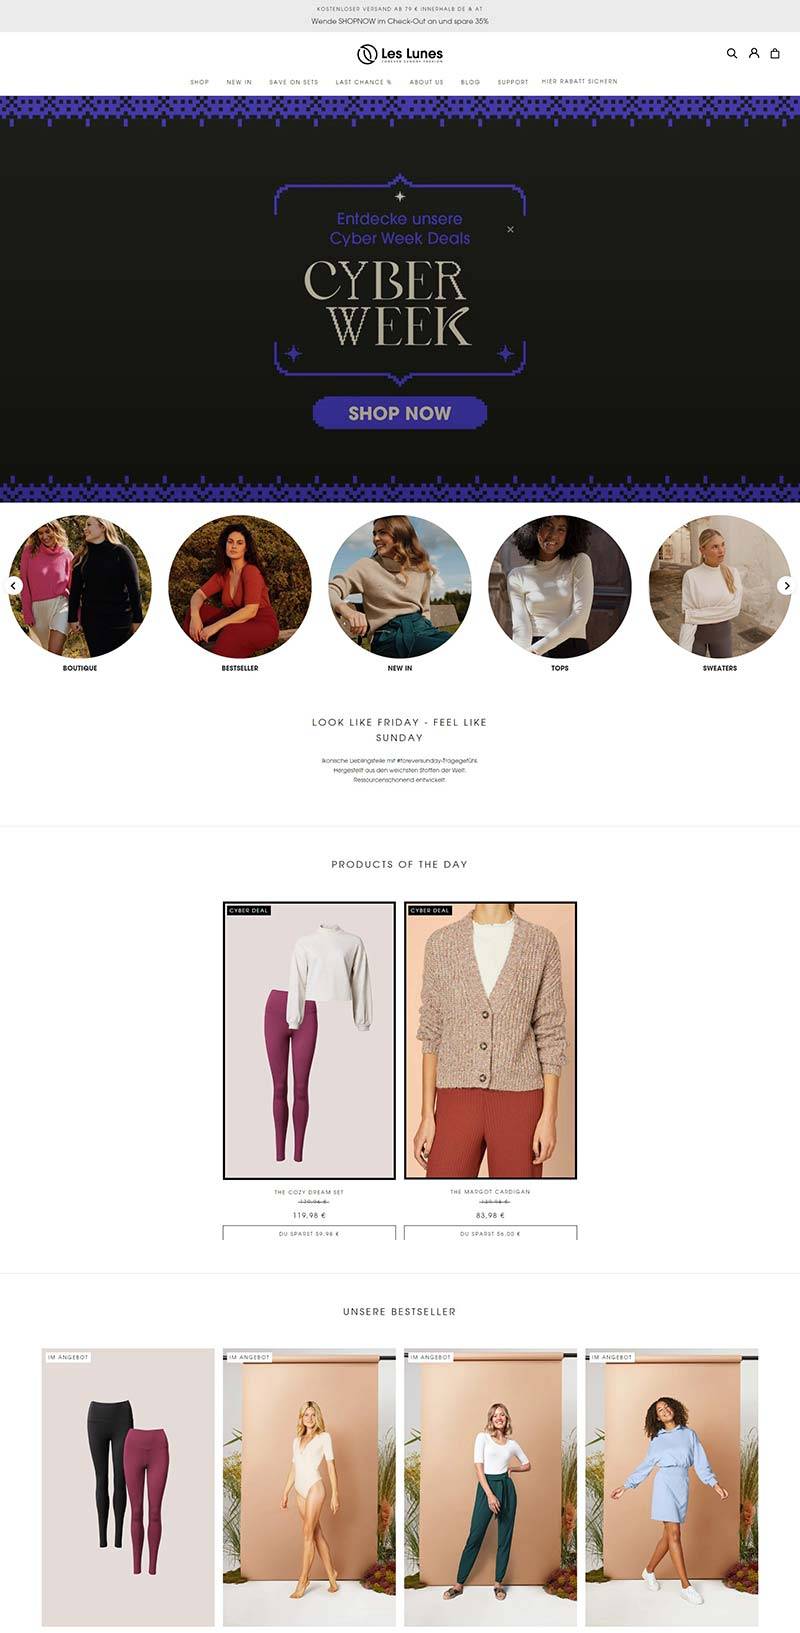 Les Lunes 德国时尚服饰品牌购物网站